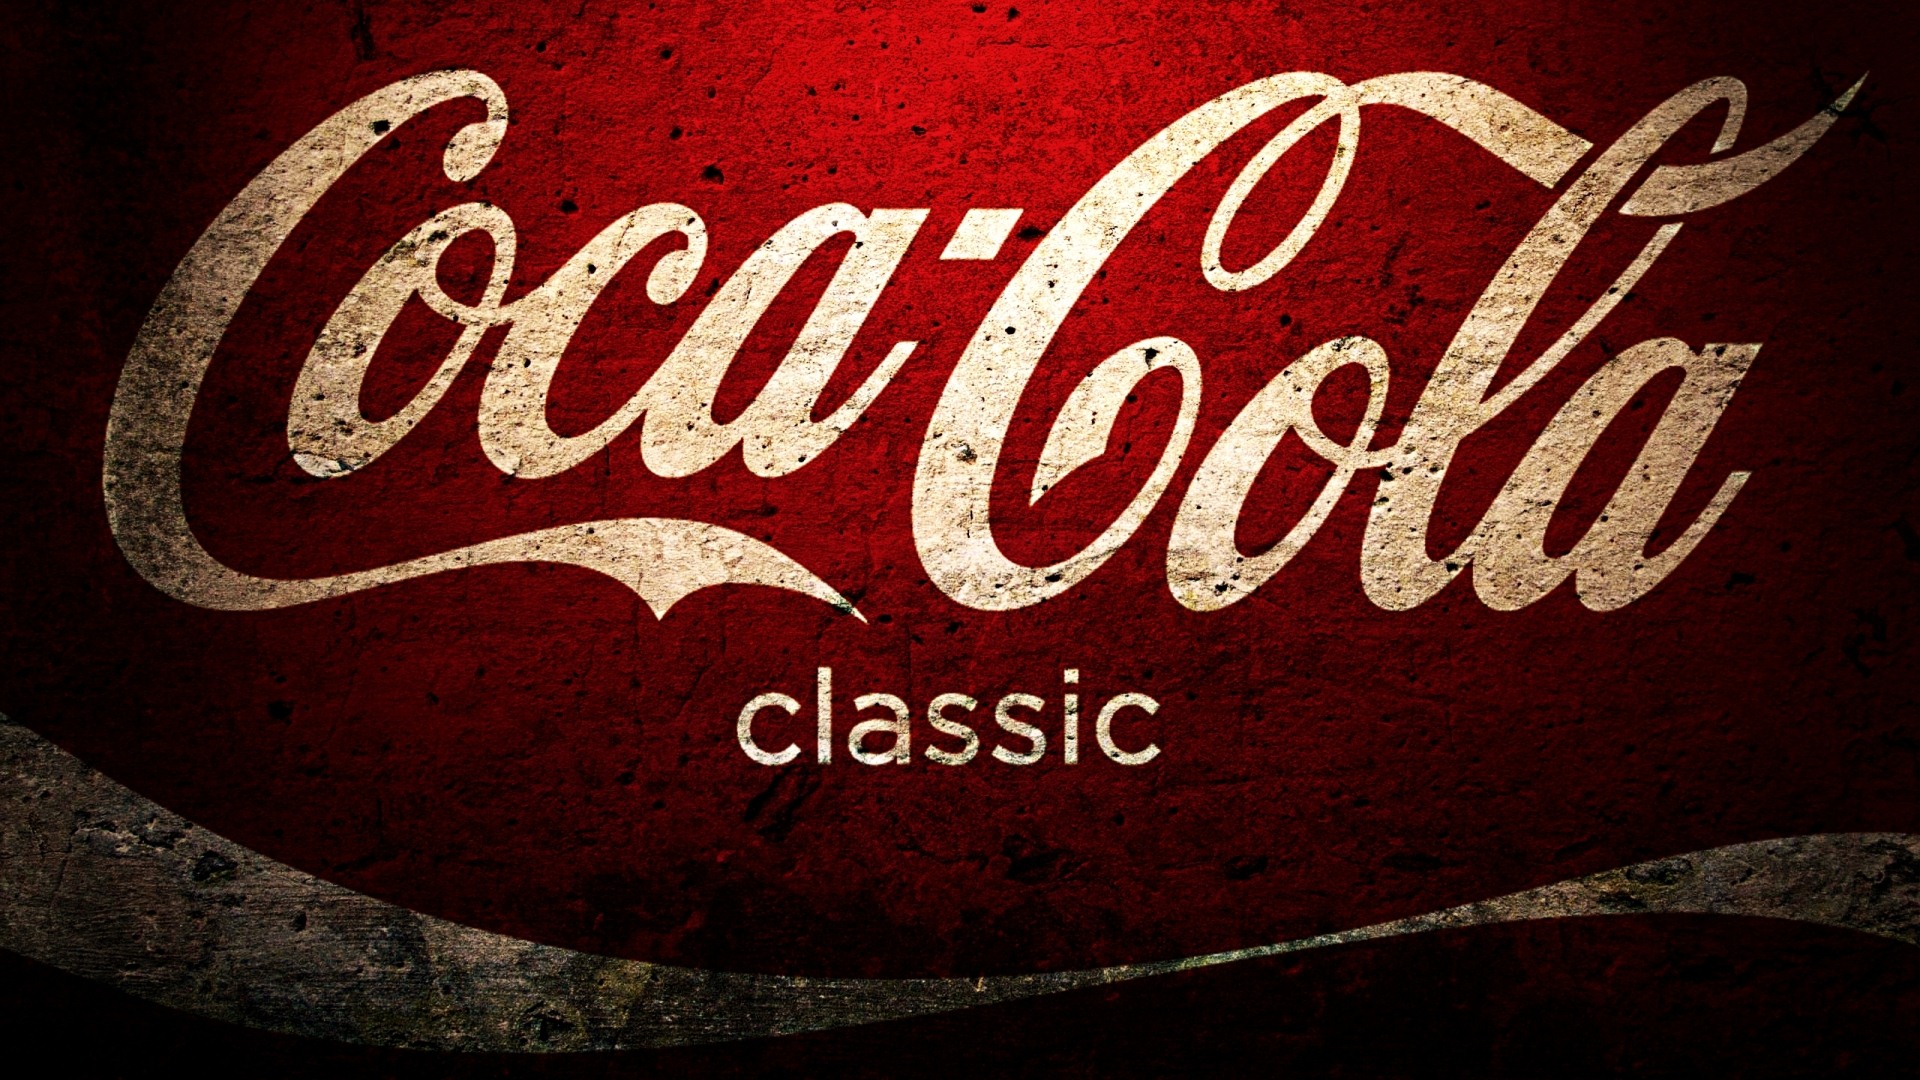 Coca-Cola beautiful ad wallpaper #25 - 1920x1080